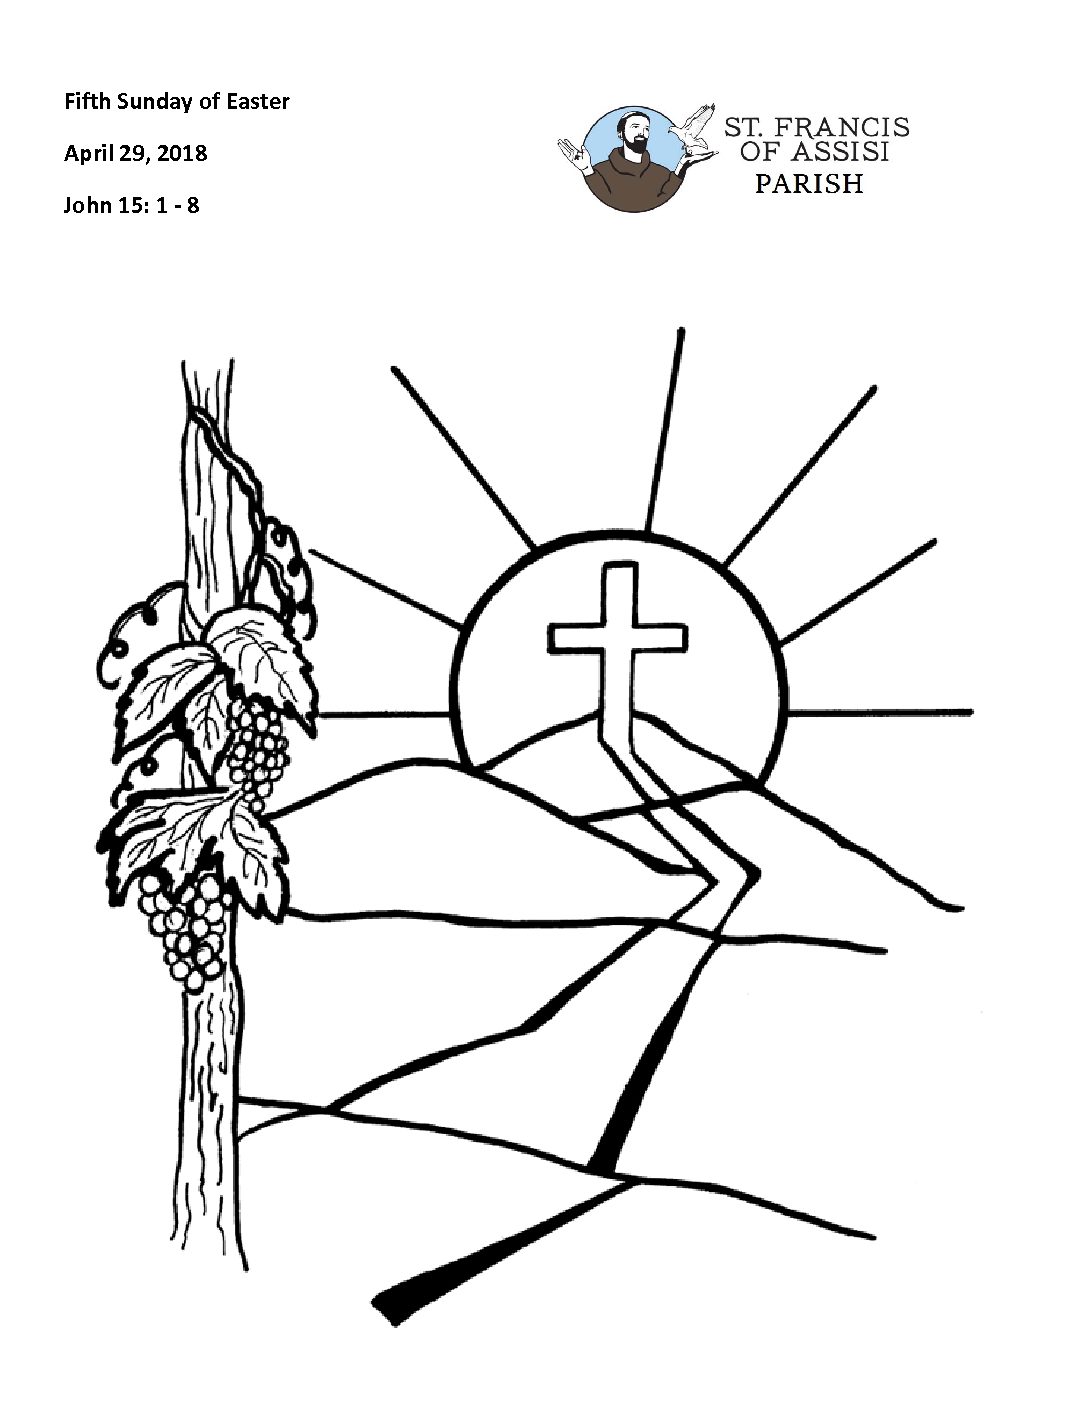 Виноградная лоза христианский символ